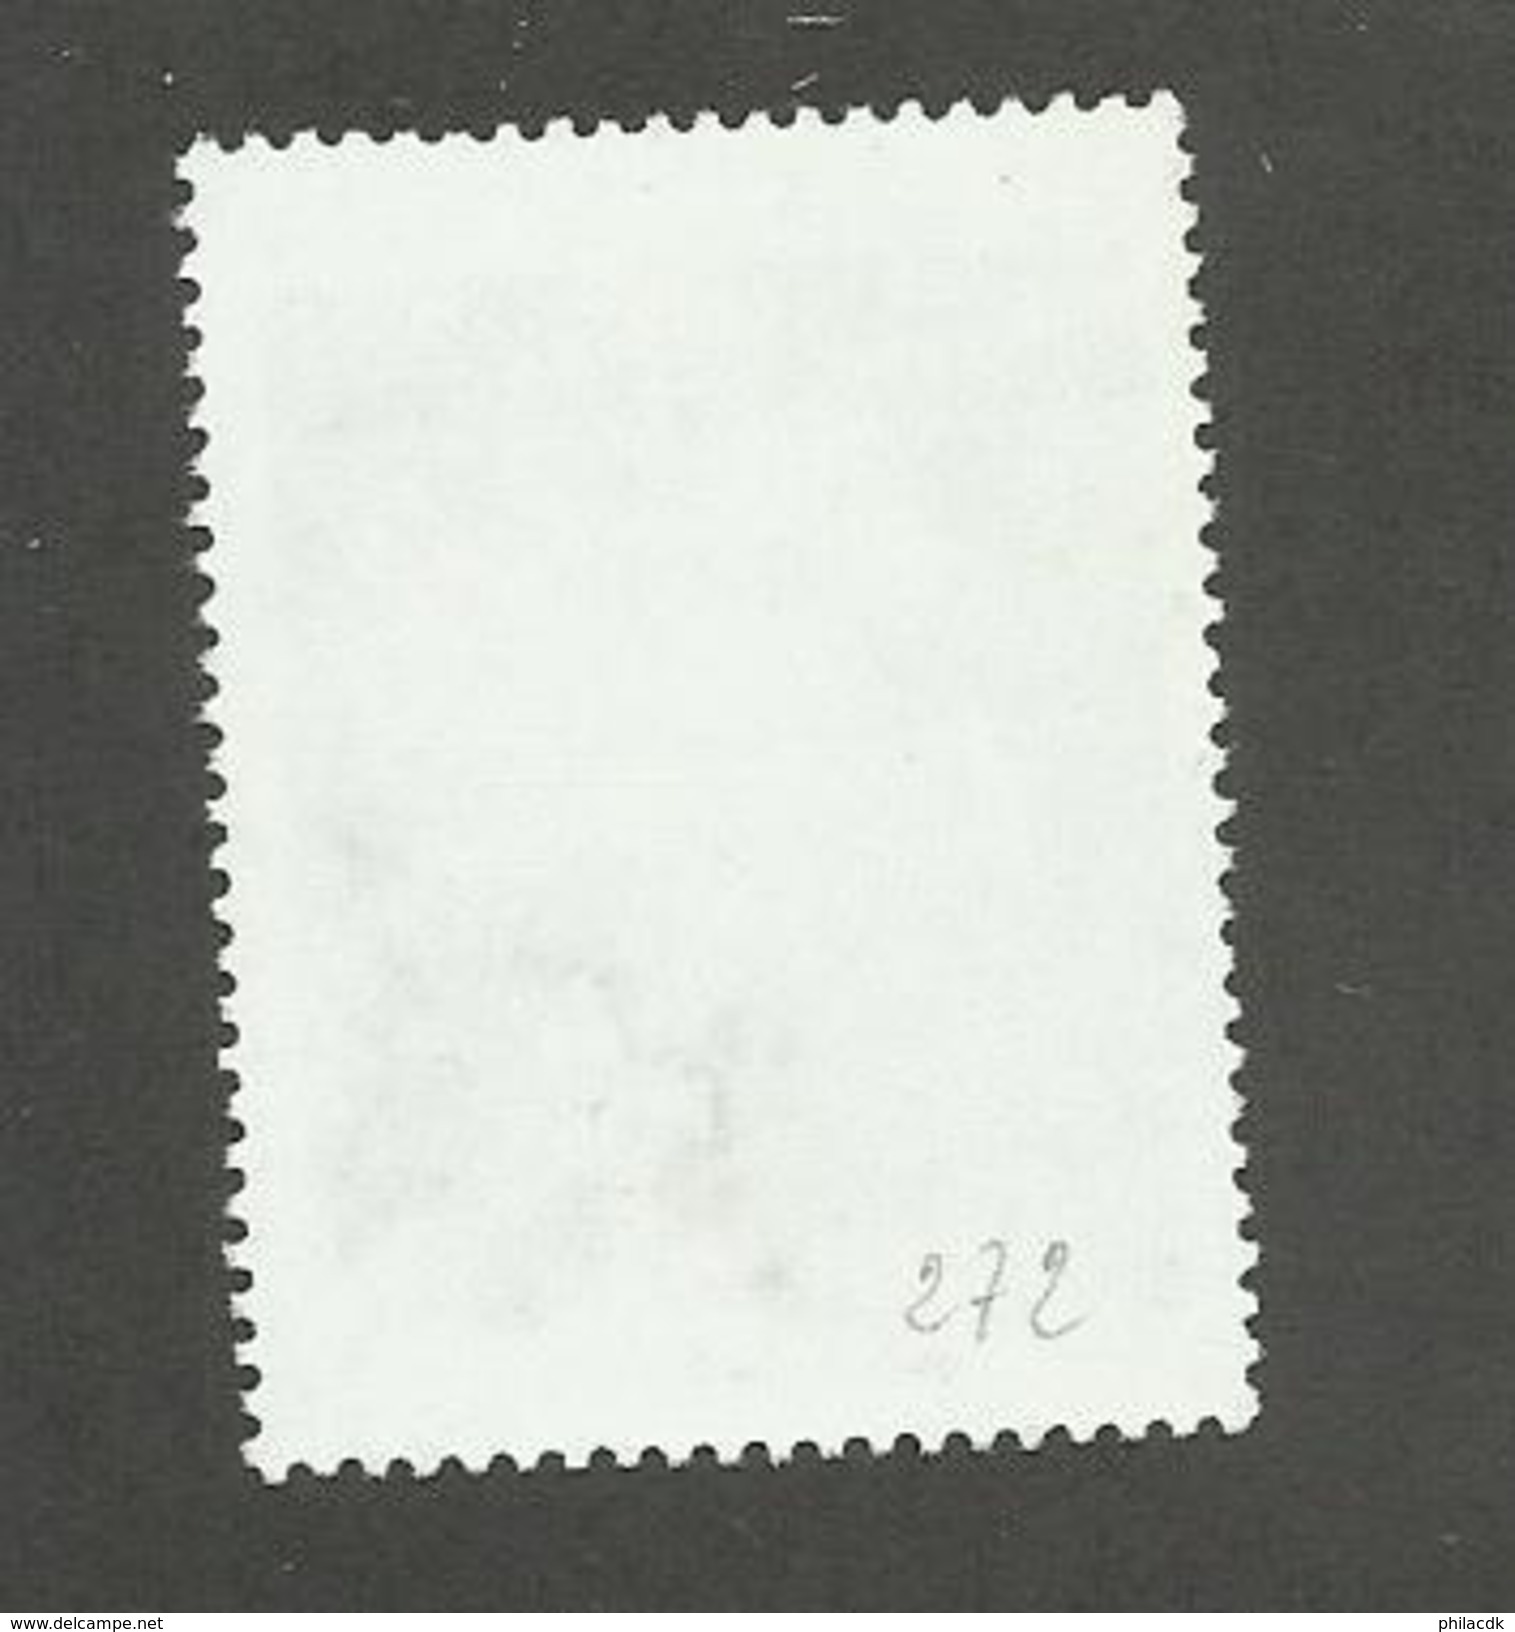 POLYNESIE FRANCAISE - N°YT 272 OBLITERE - COTE YT : 0.50&euro; - 1987 - Oblitérés